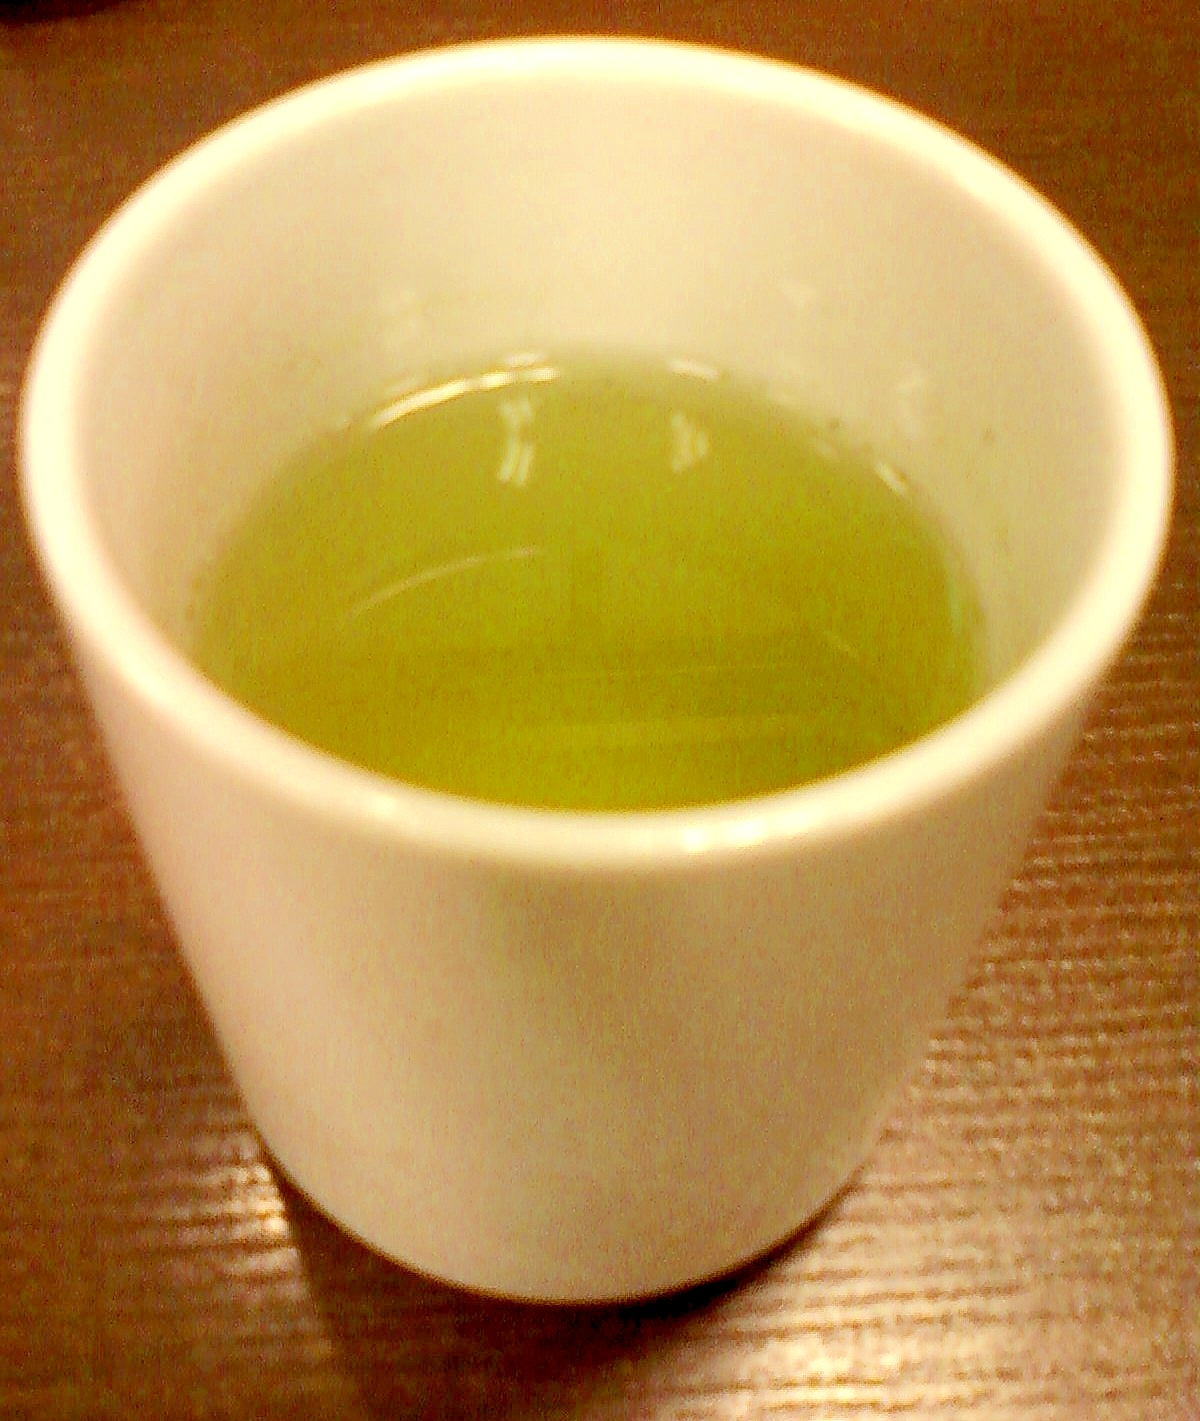 ☆*:・☆抹茶・レモン果汁入り日本酒☆*:・☆